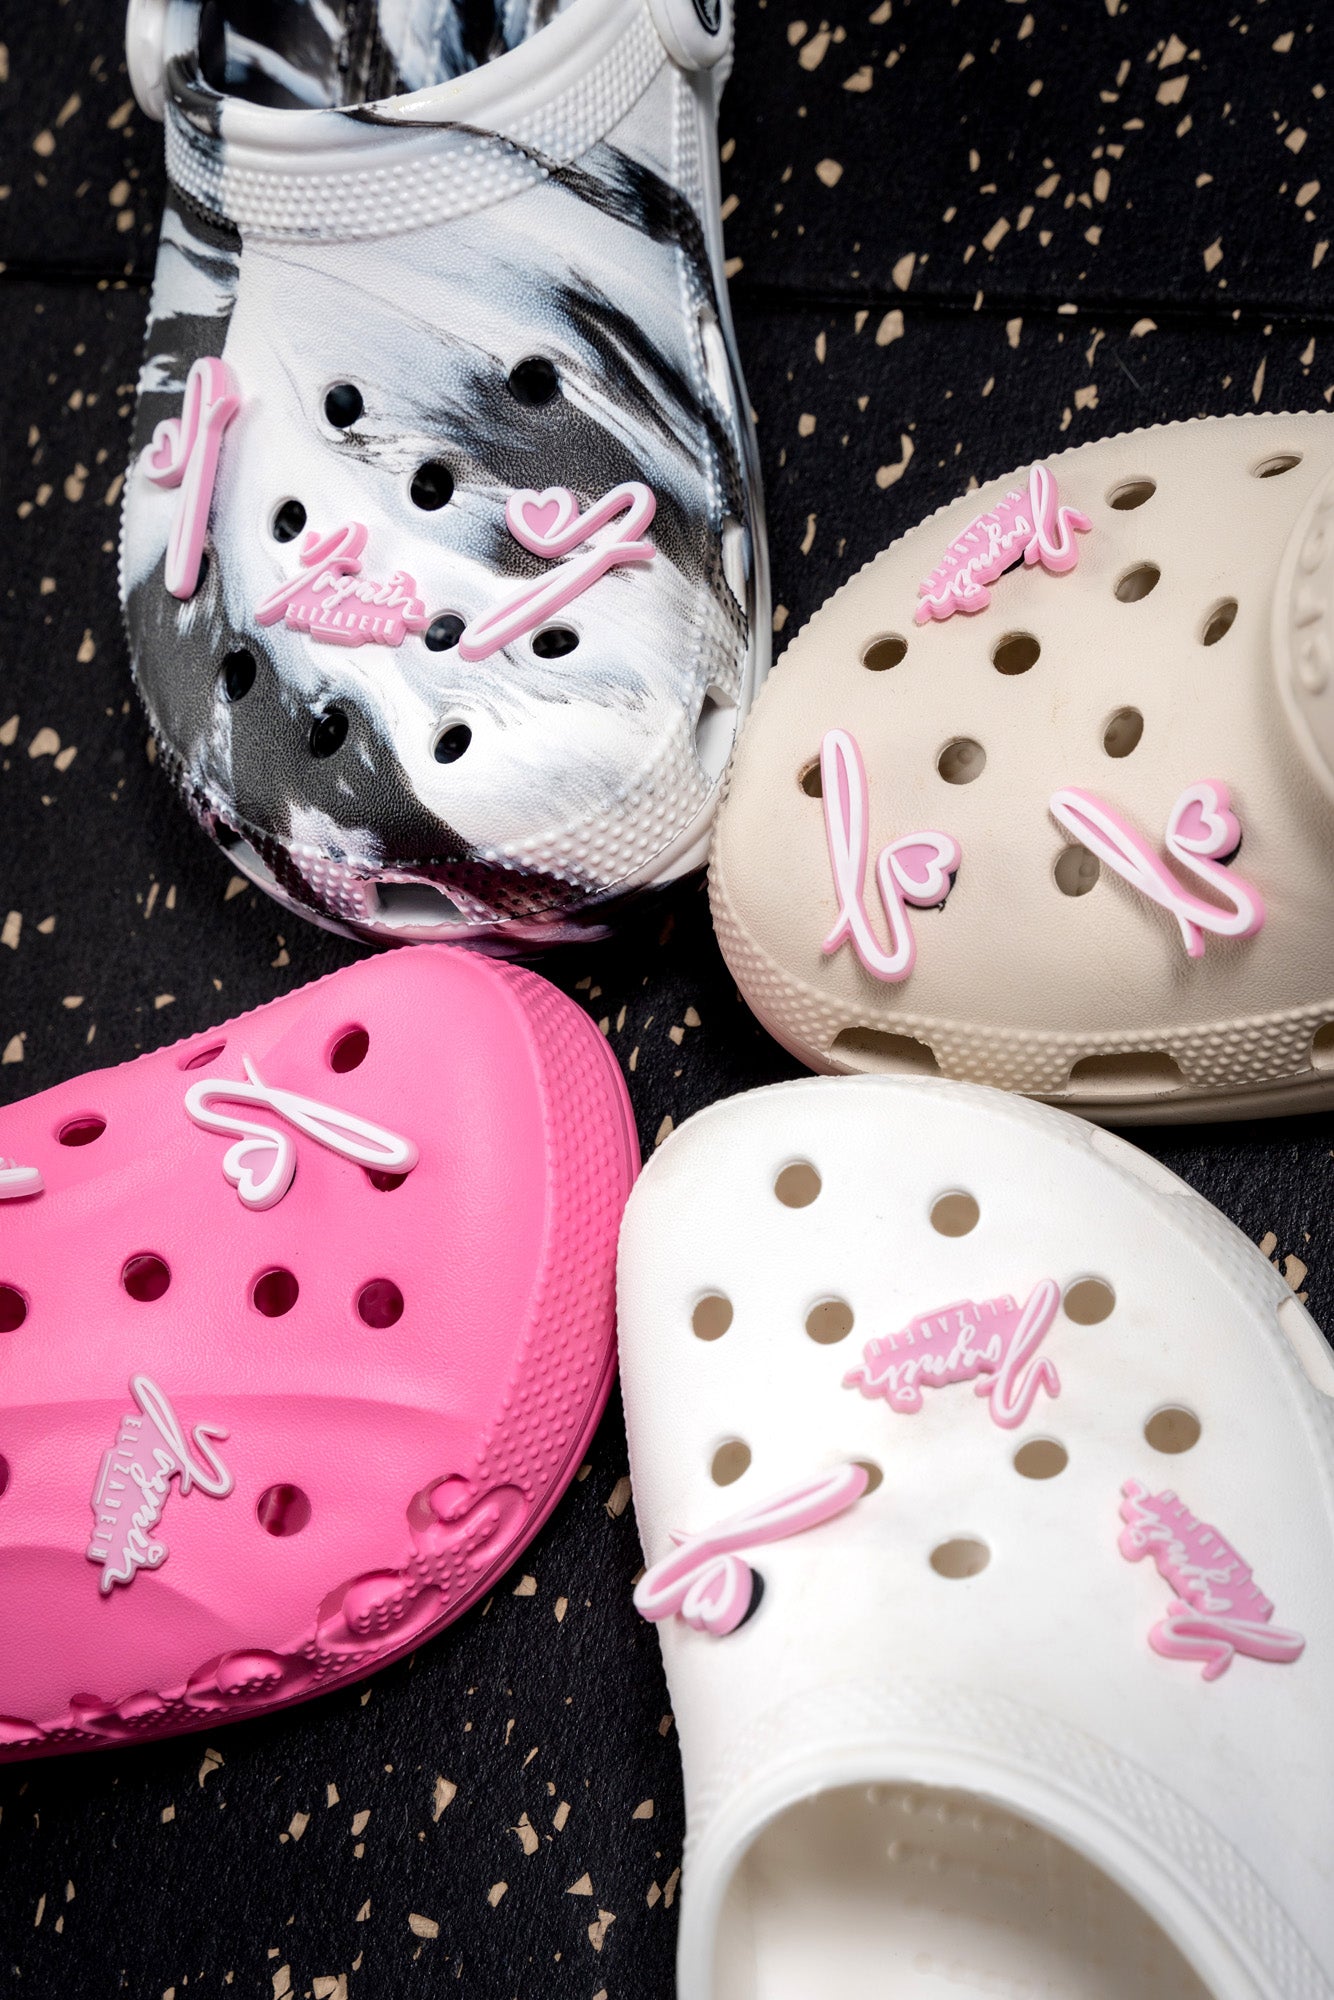 Kuromi 19 pc Shoe Charms for Crocs – Liz's Chaos Molds & More